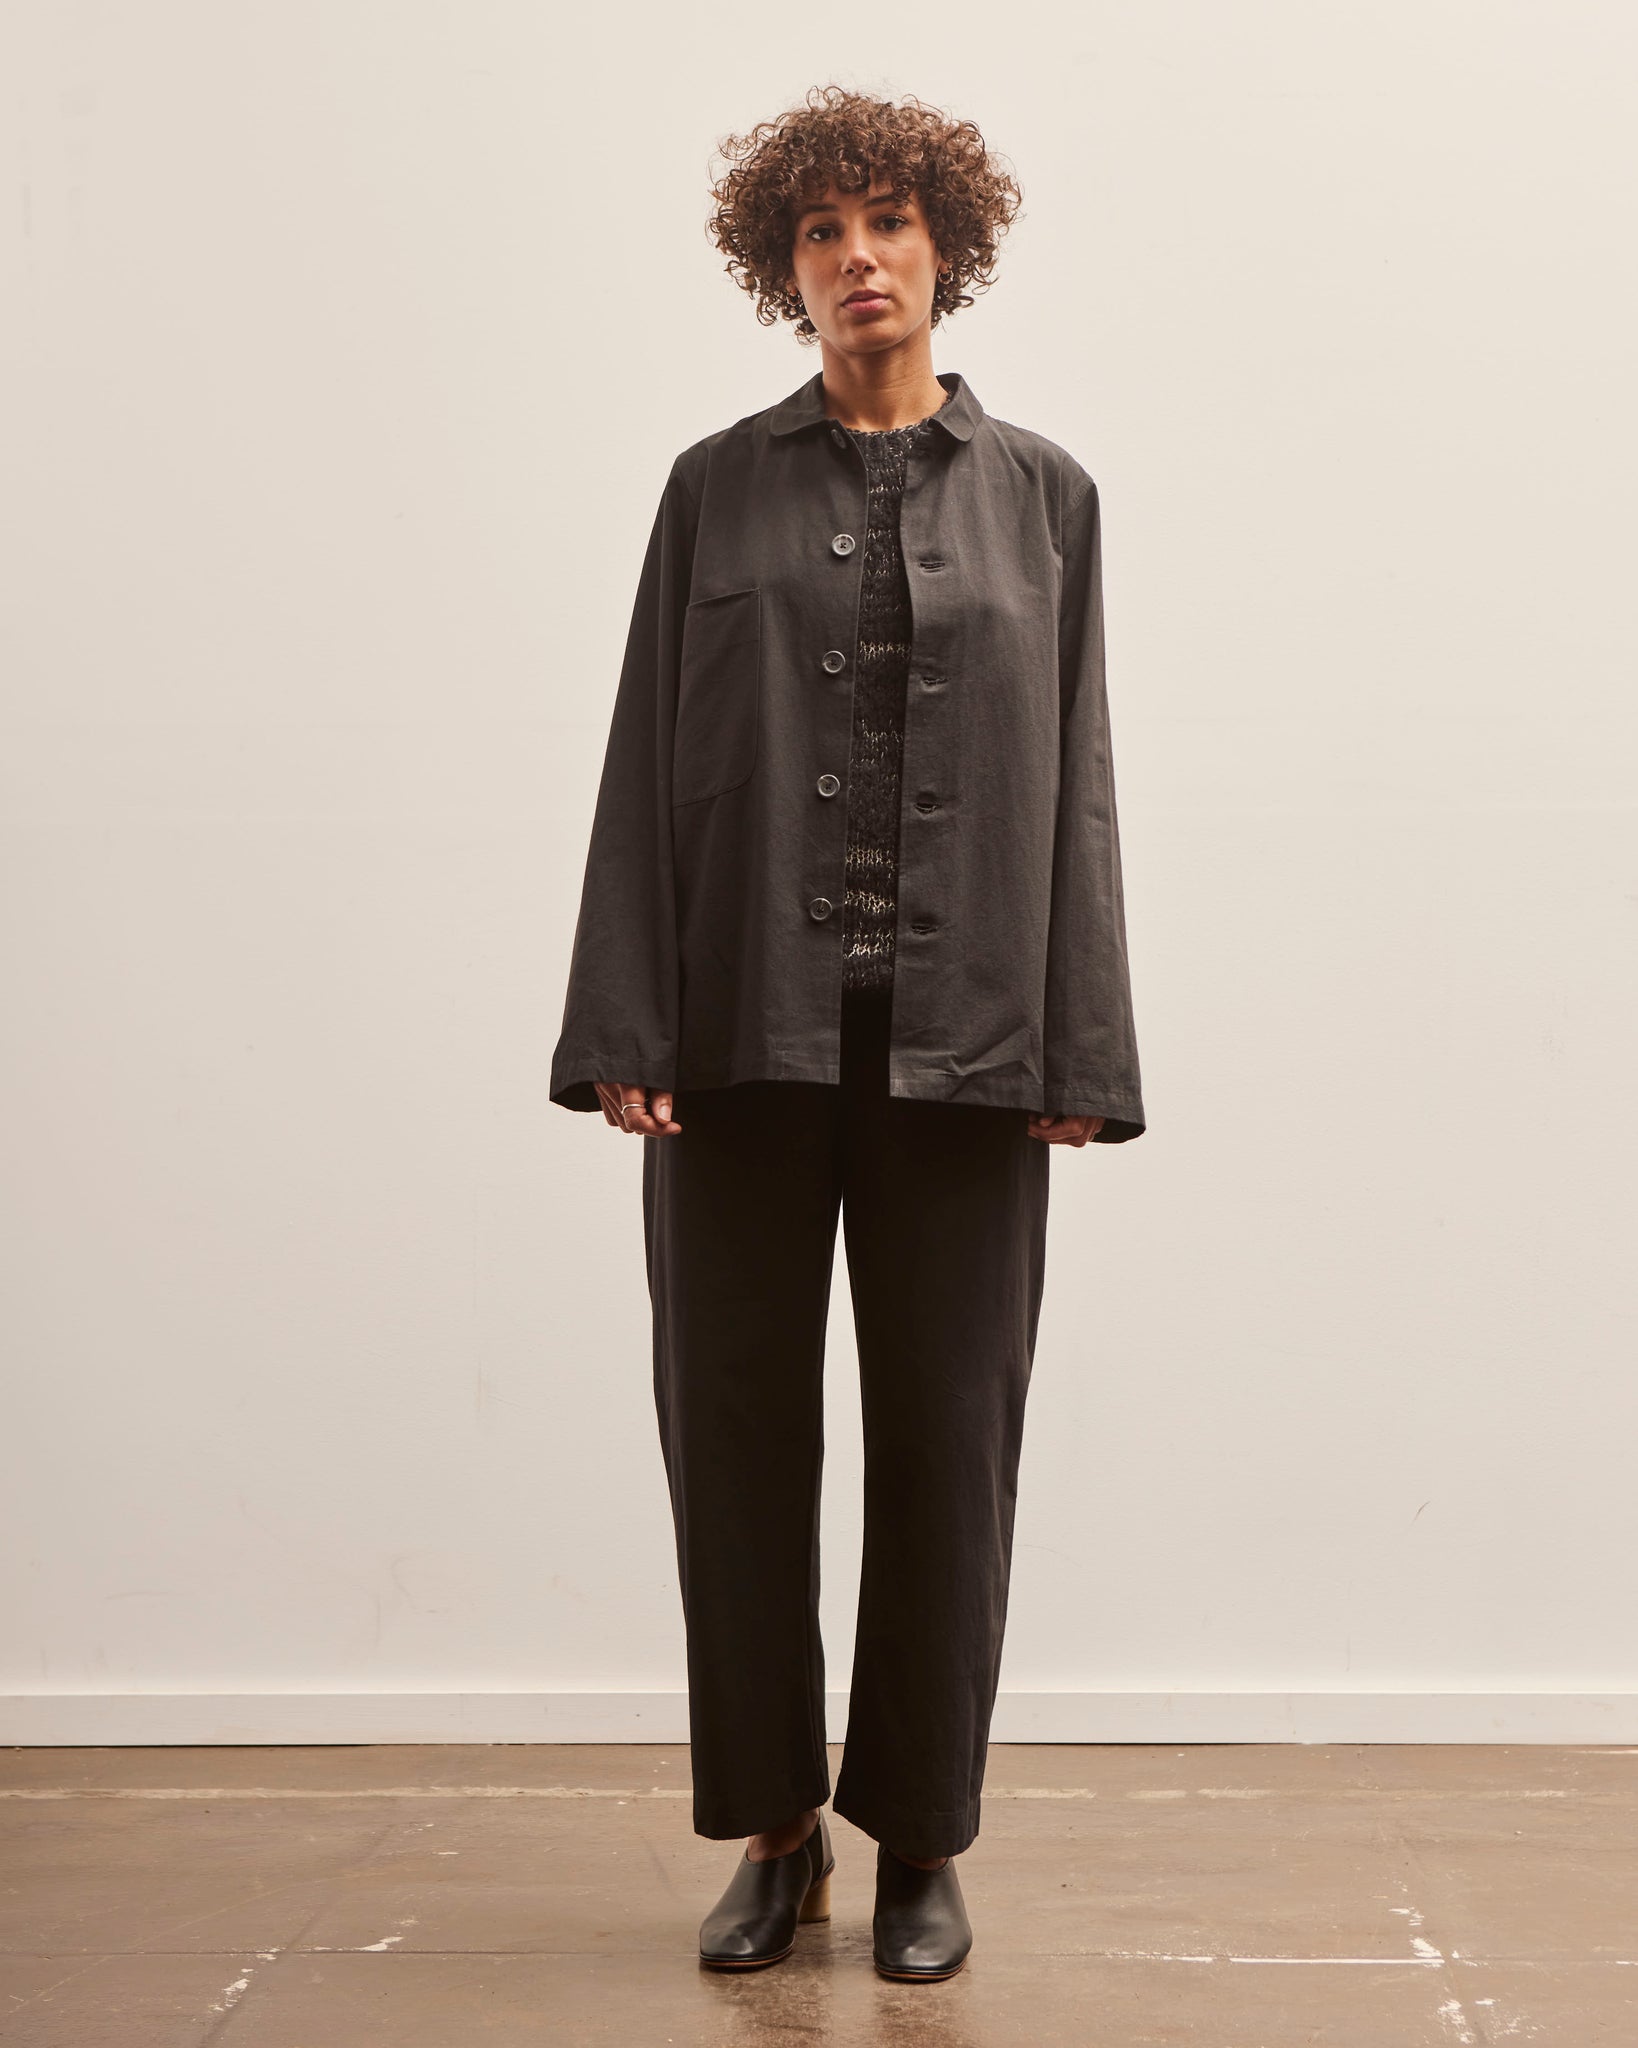 Lauren Manoogian Gallery Jacket, Black